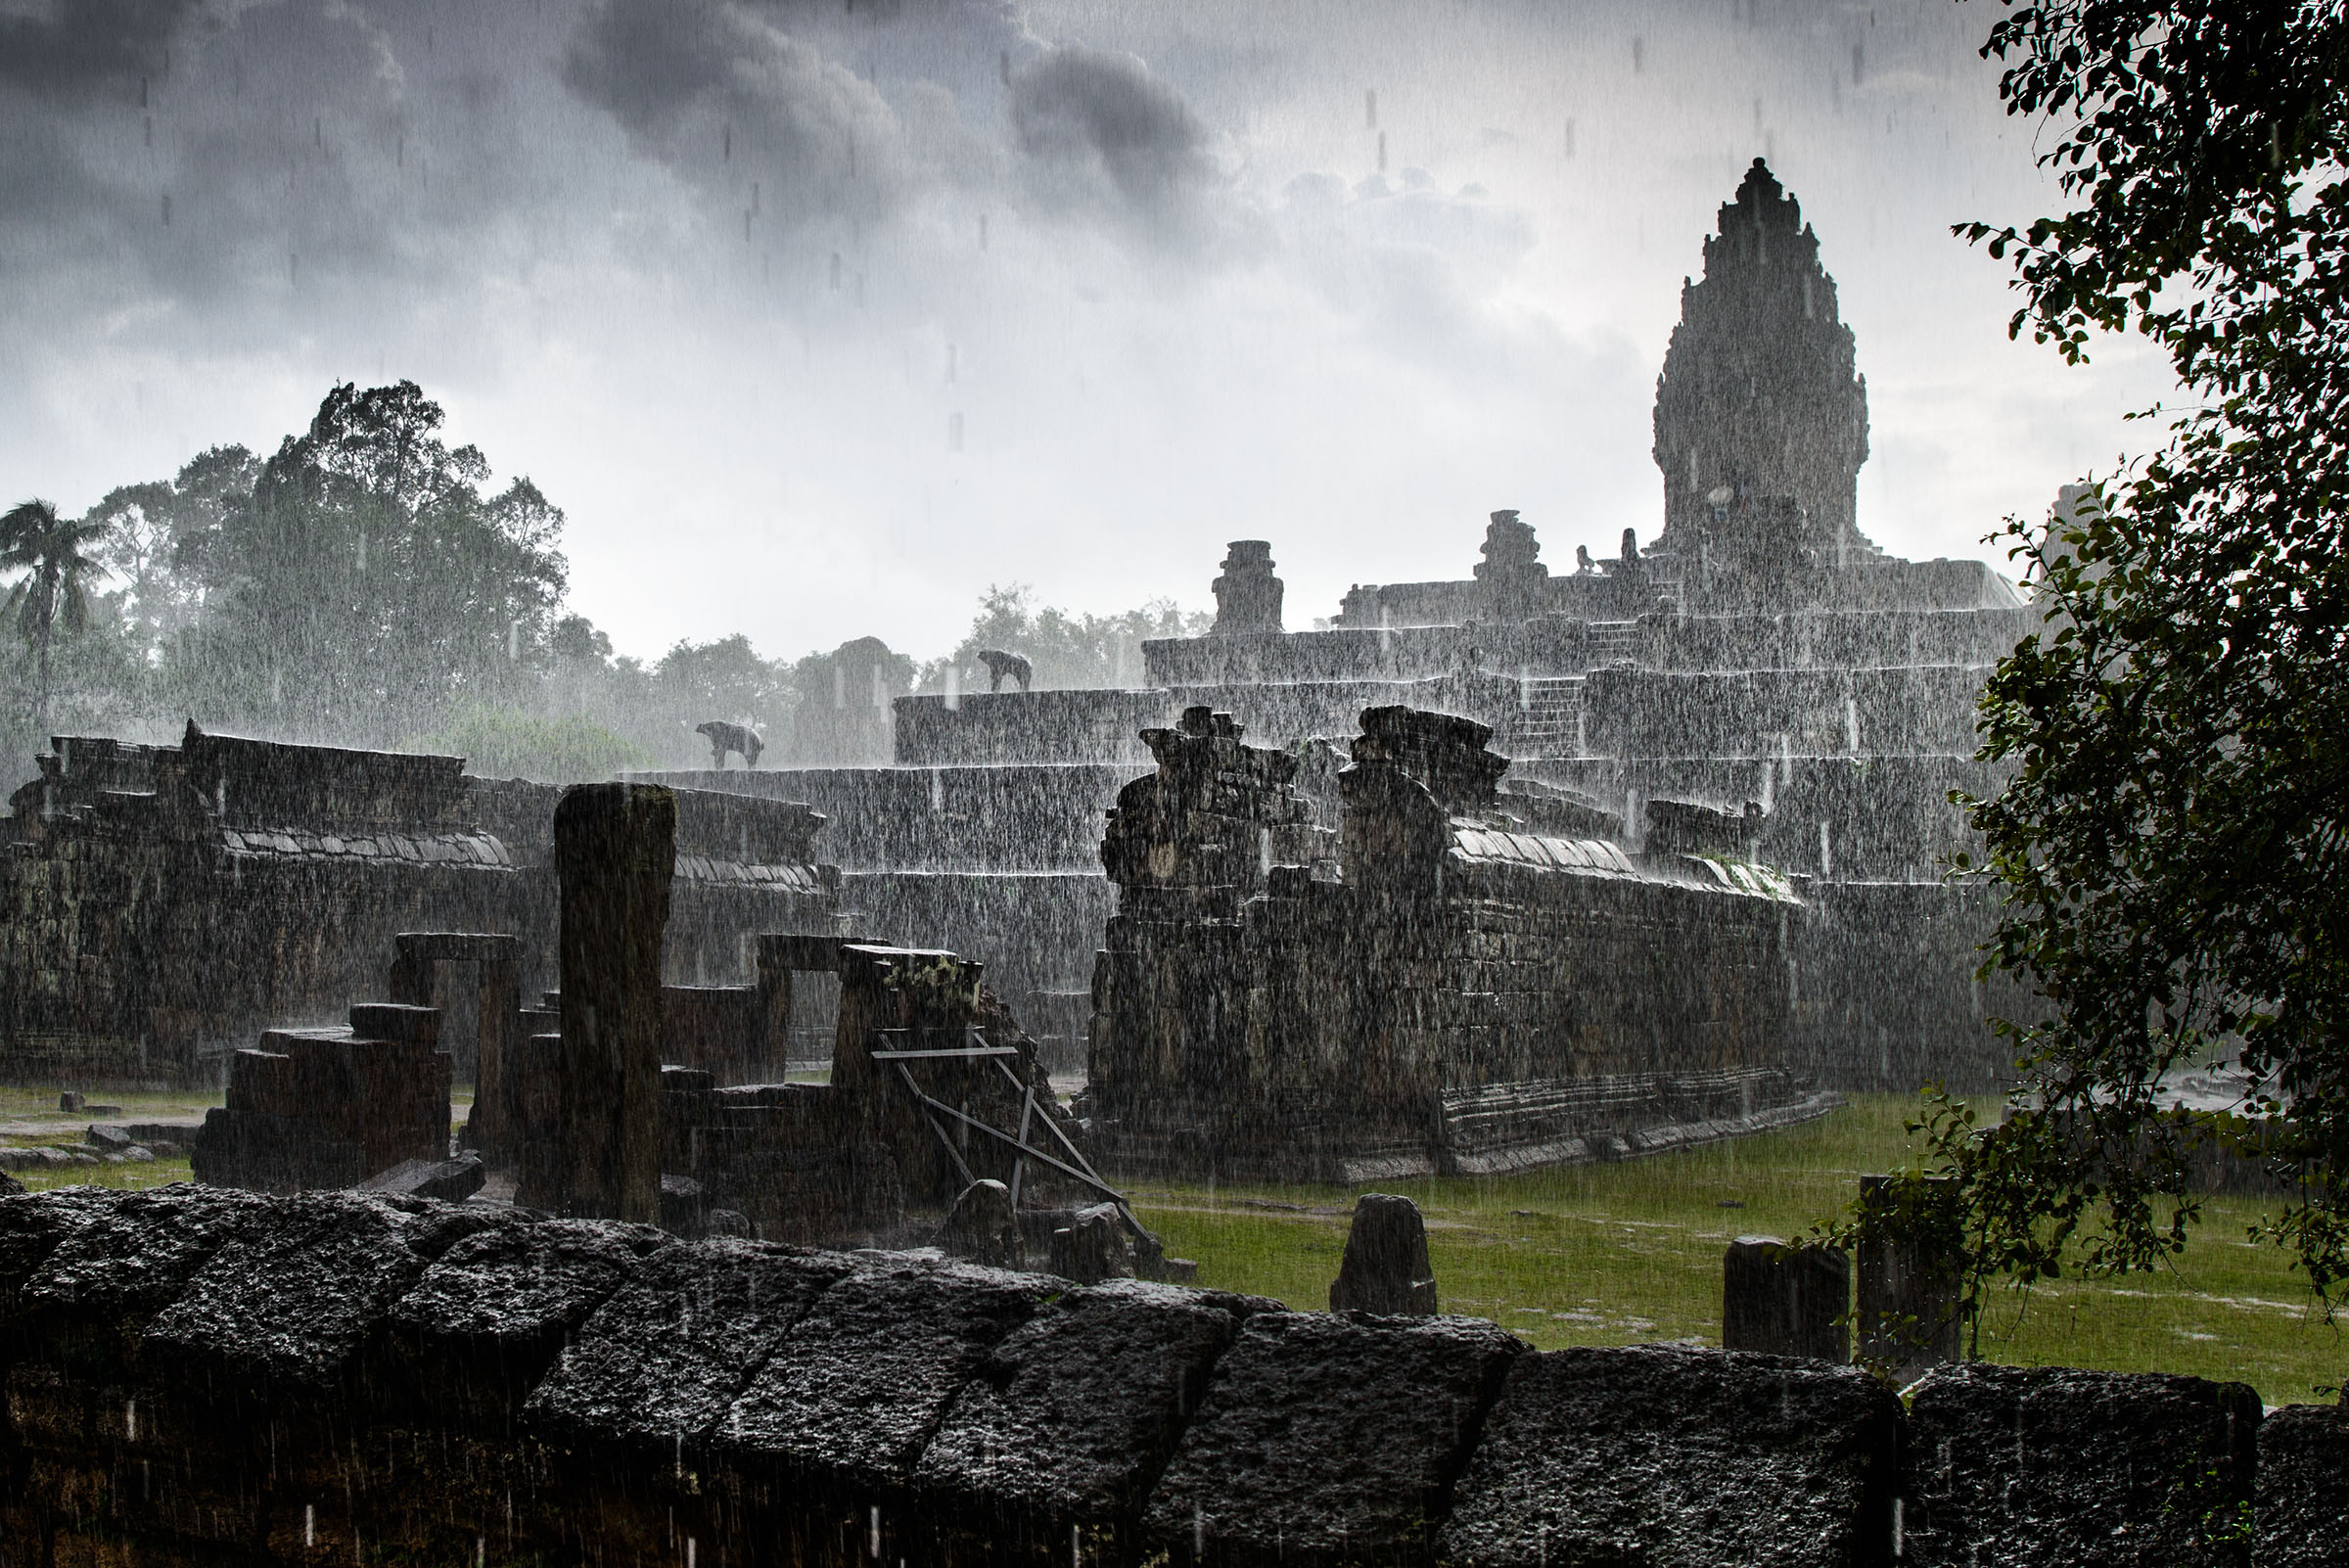 Rainy season in Cambodia...